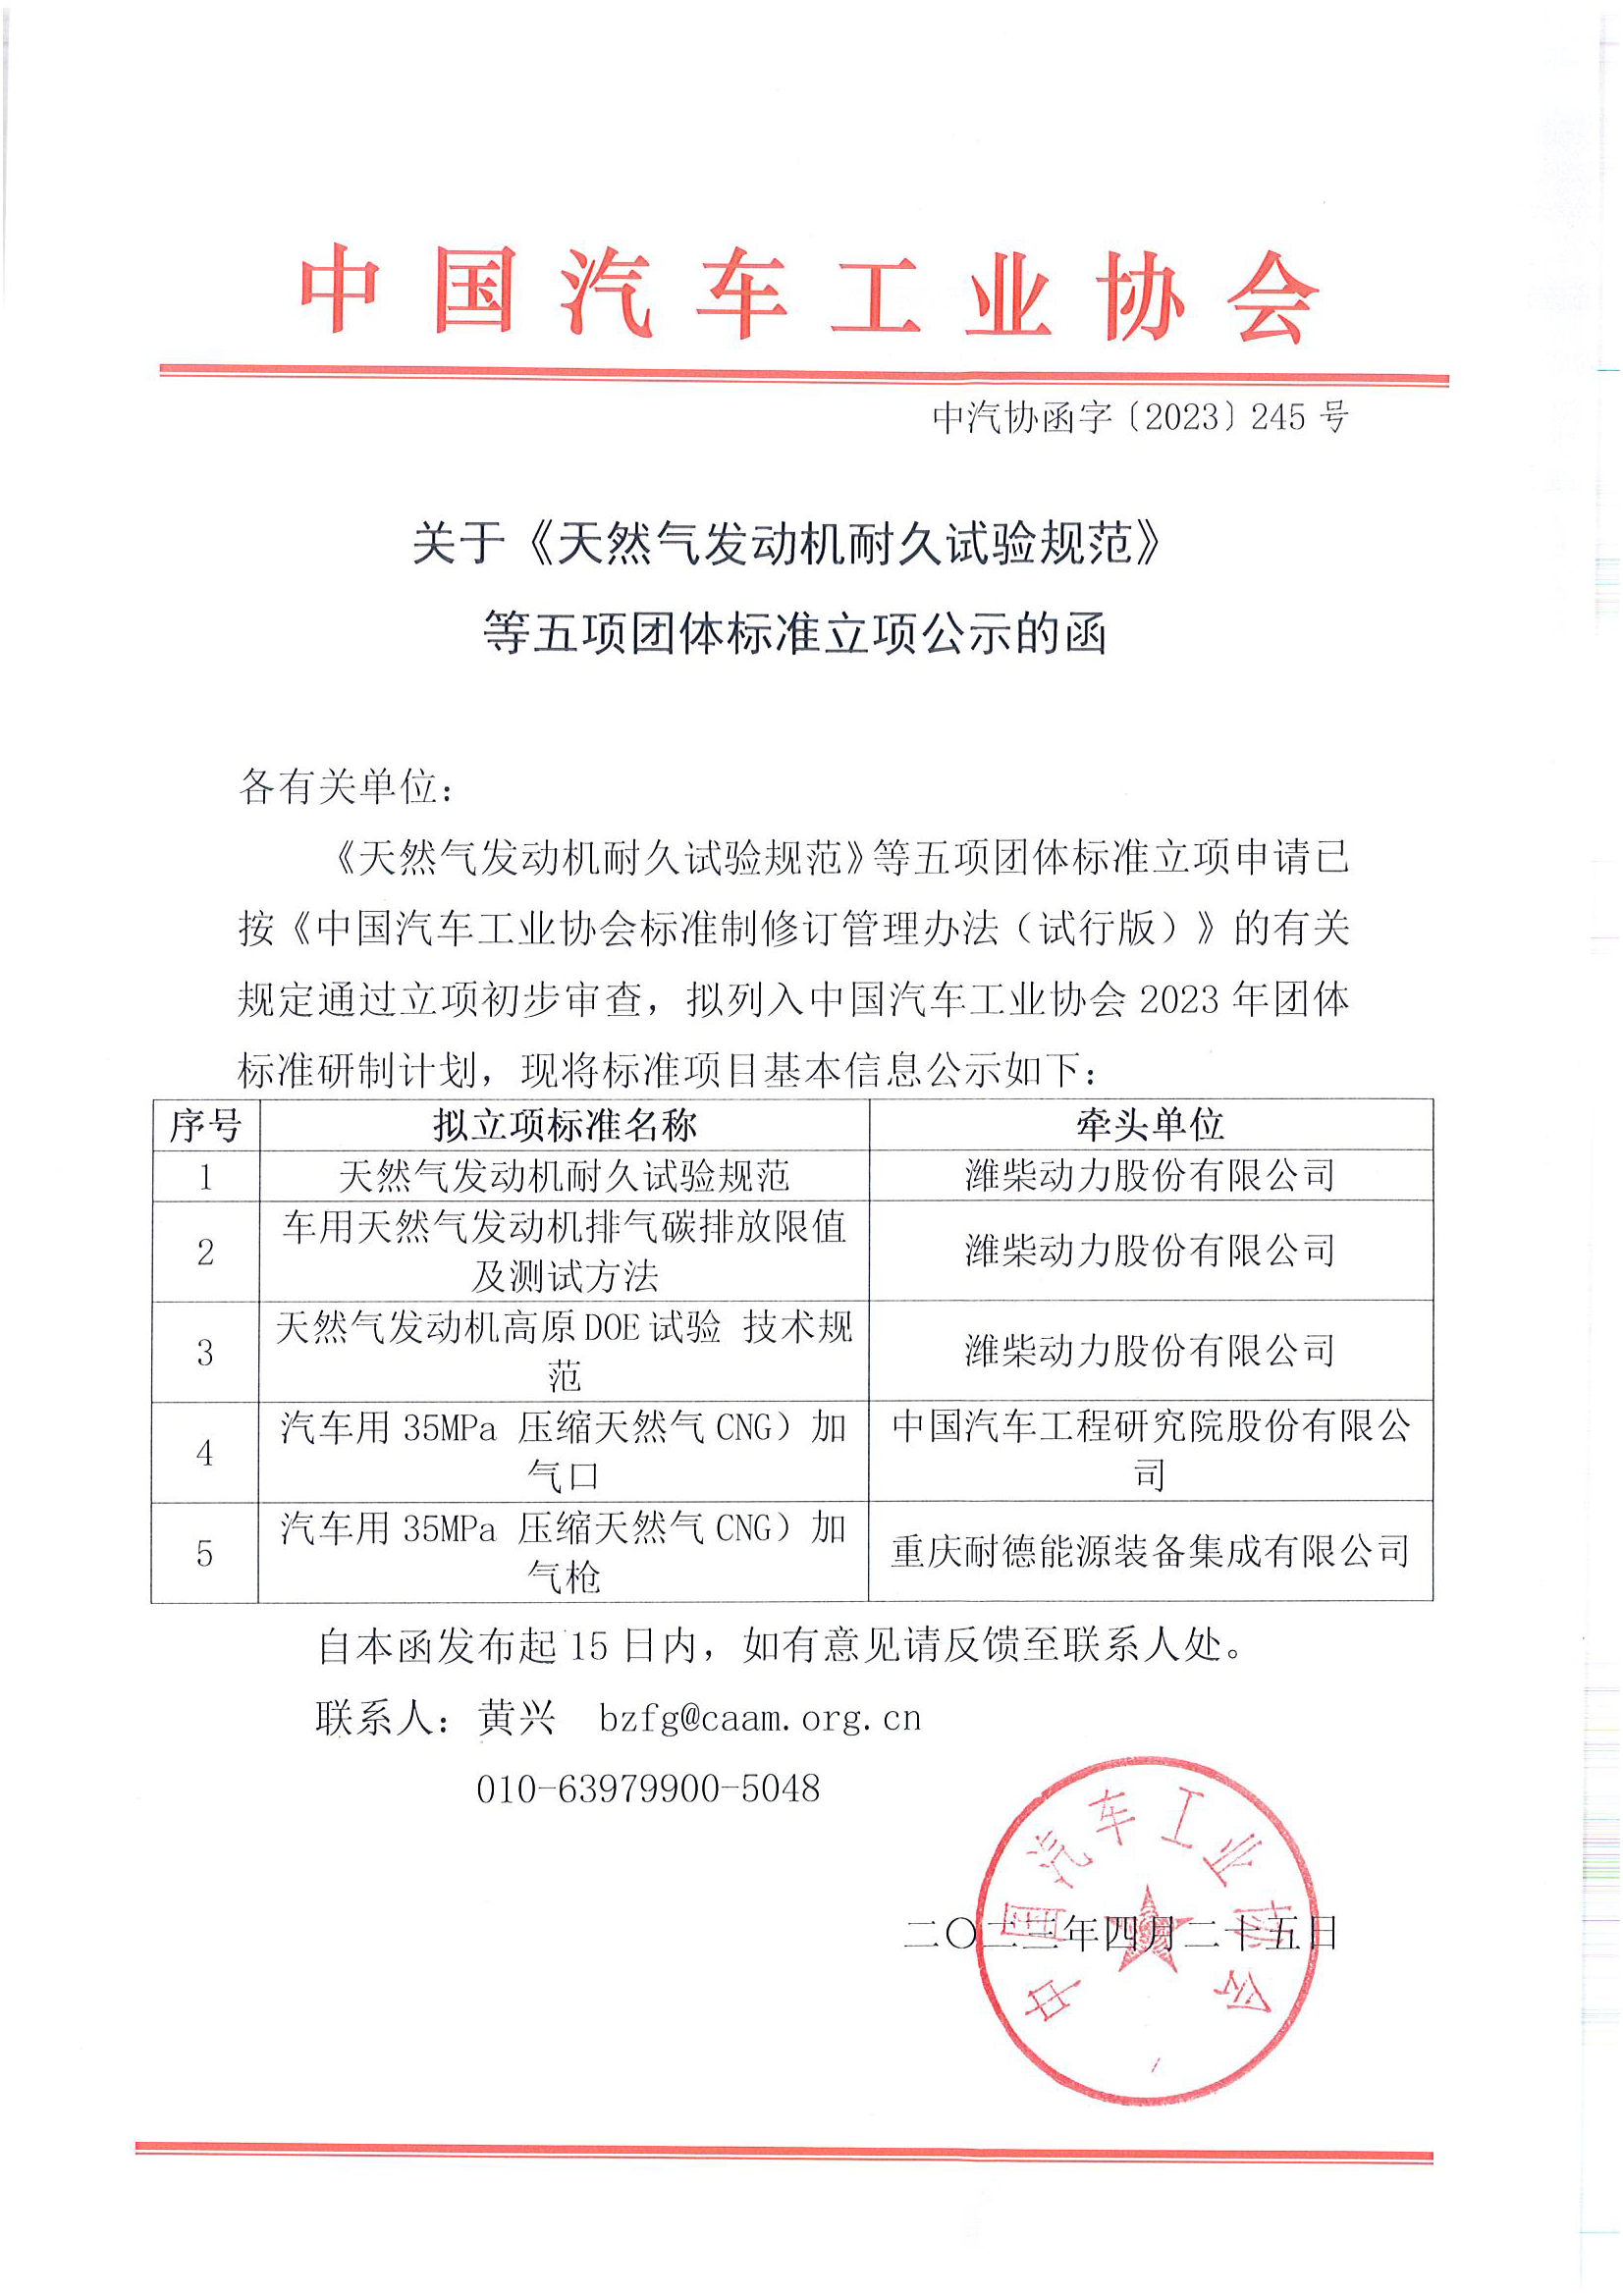 中汽协函字〔2023〕245号--中国汽车工业协会关于《天然气发动机耐久试验规范》等五项团体标准立项公示的函.png